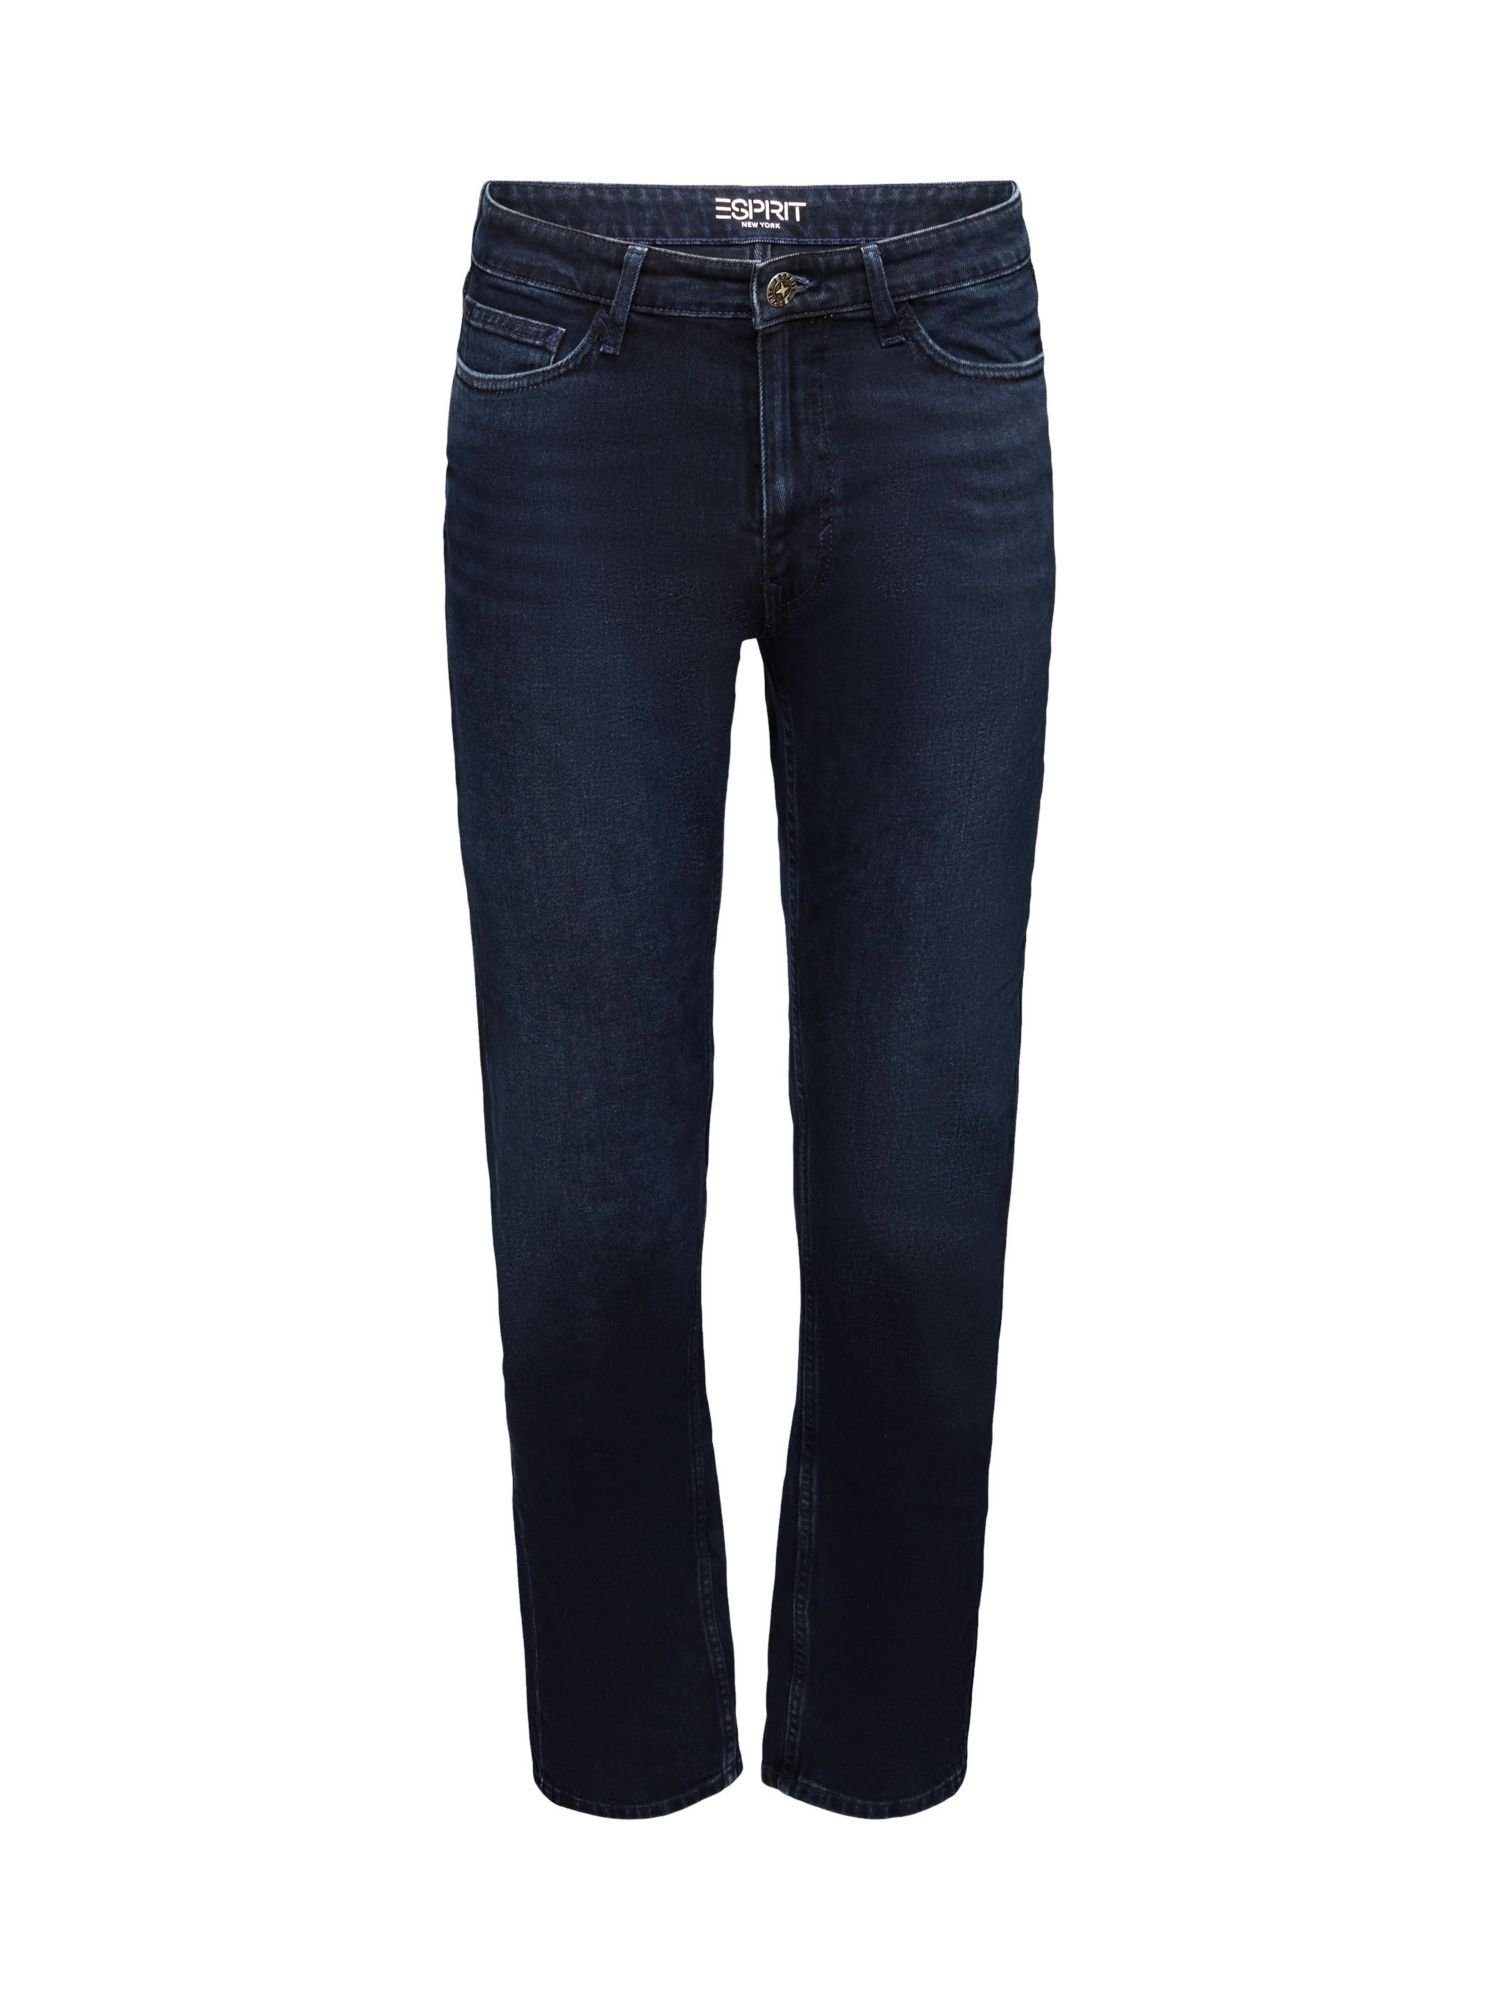 Bund und Straight-Jeans Passform gerader Esprit Jeans mittelhohem mit